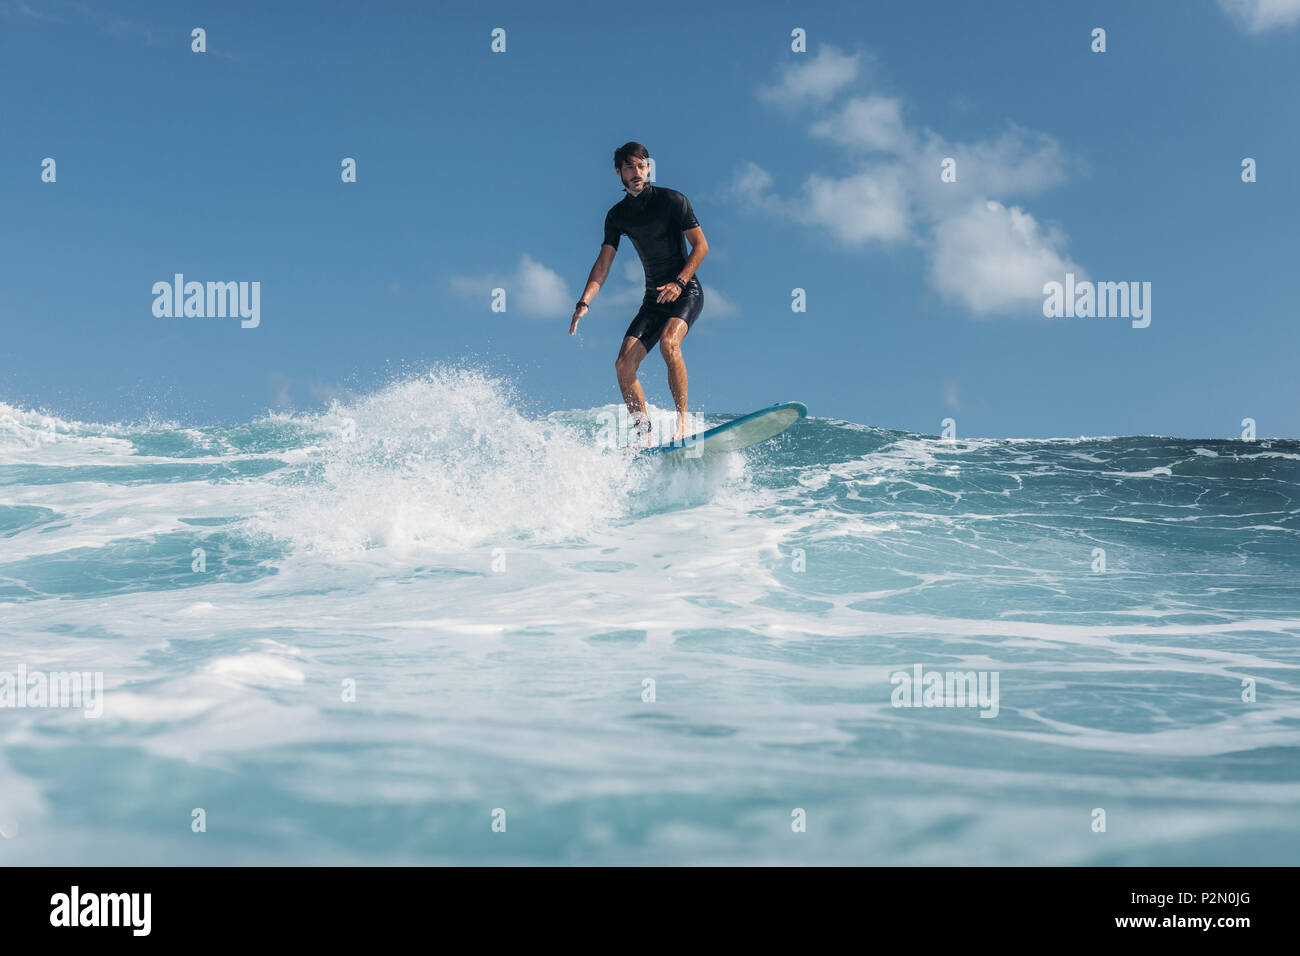 Mann auf Surfbrett surfen Welle im Ozean Stockfoto